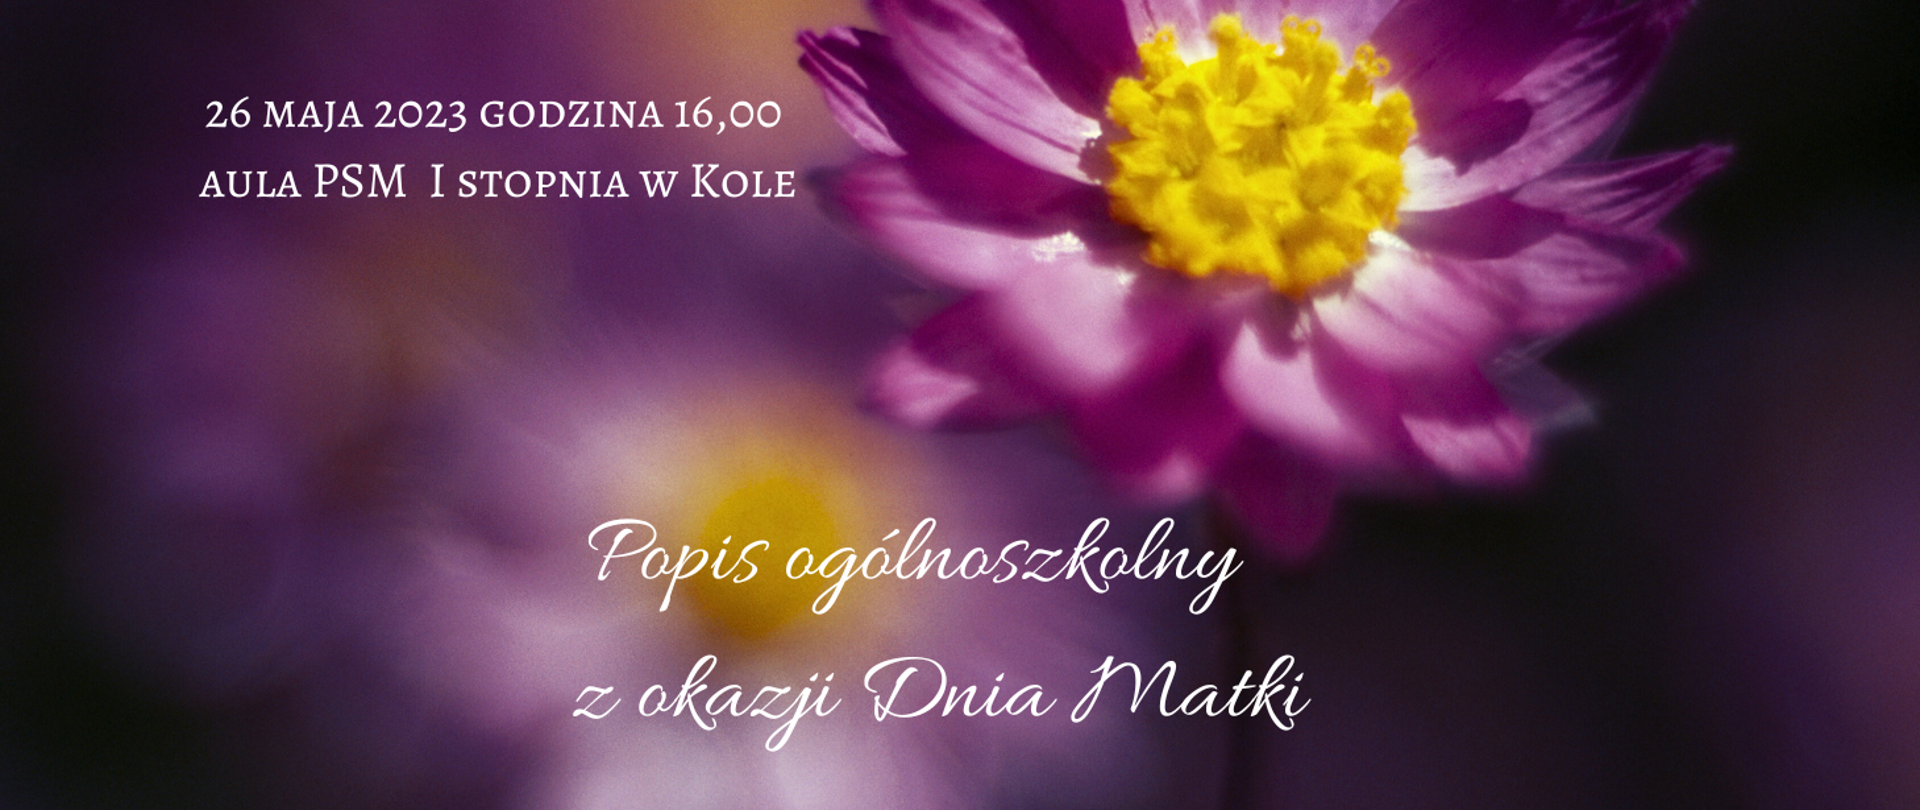 na tle fioletowych kwiatów zaproszenie na popis ogólnoszkolny z okazji Dnia Matki 26 maja 2023 godzina 16,00 aula szkoły